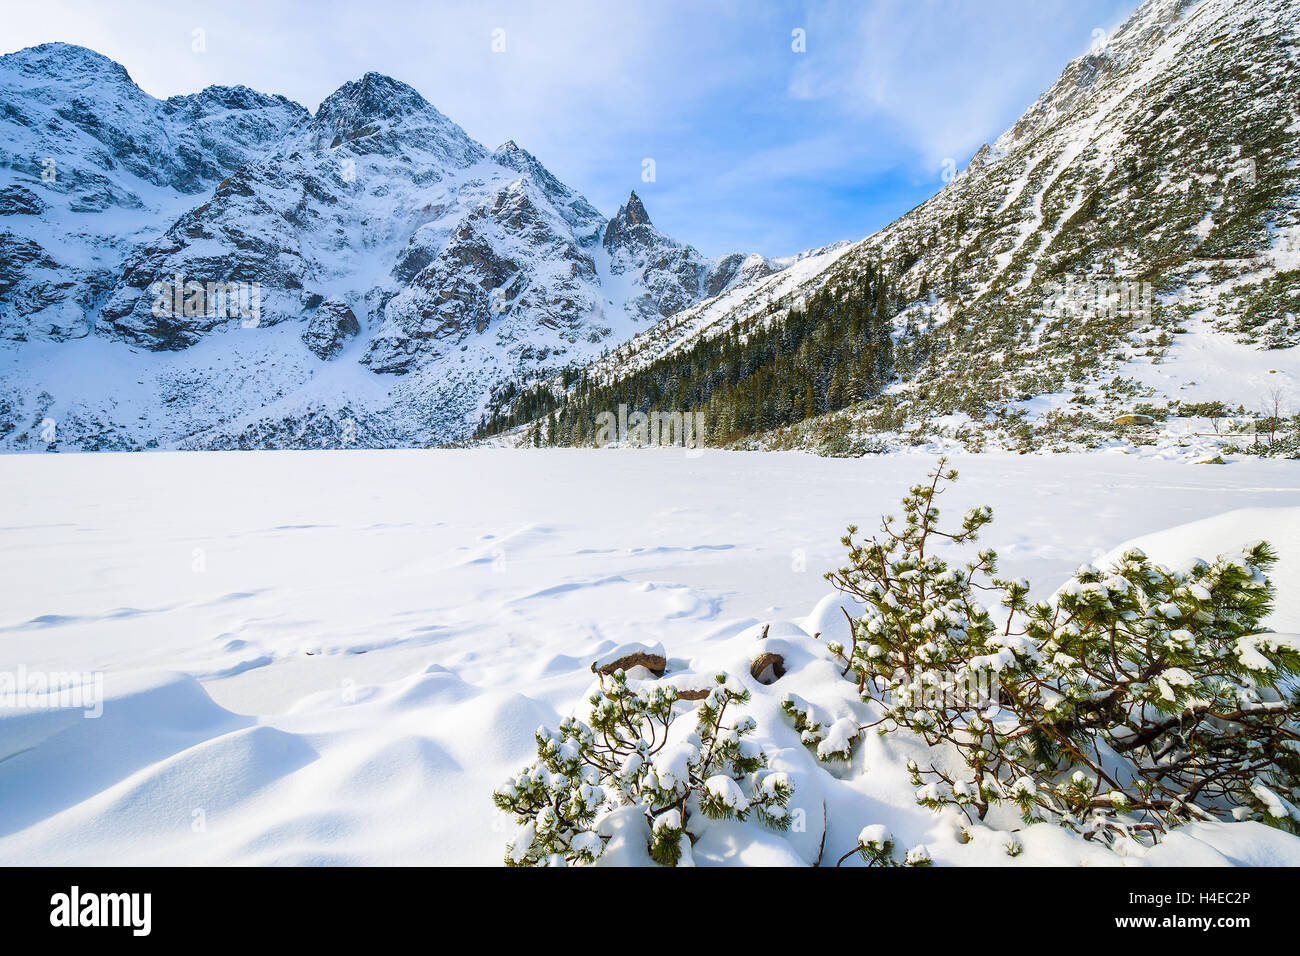 Neuschnee auf gefrorenen Morskie Oko-See im Winter, Tatra-Gebirge, Polen Stockfoto